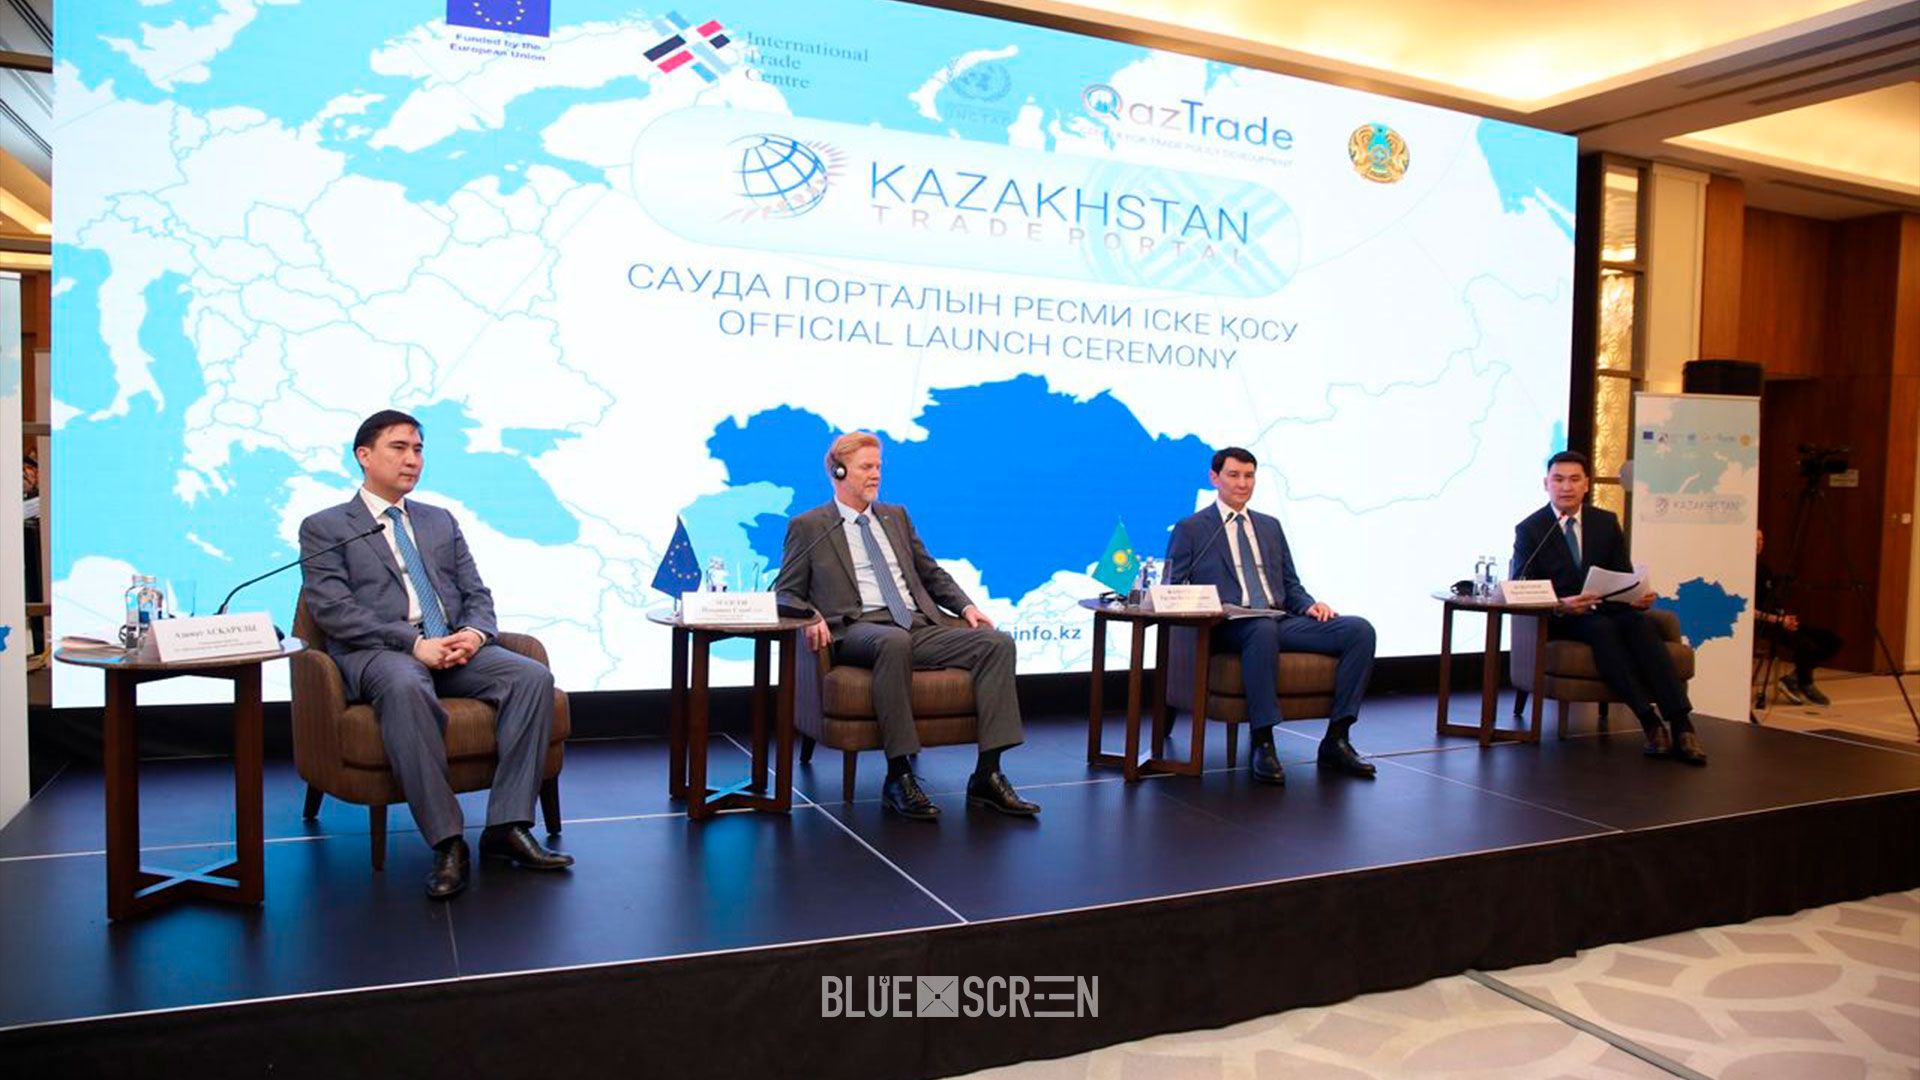  Торговый портал для упрощения процедур торговли запустили в Казахстане.